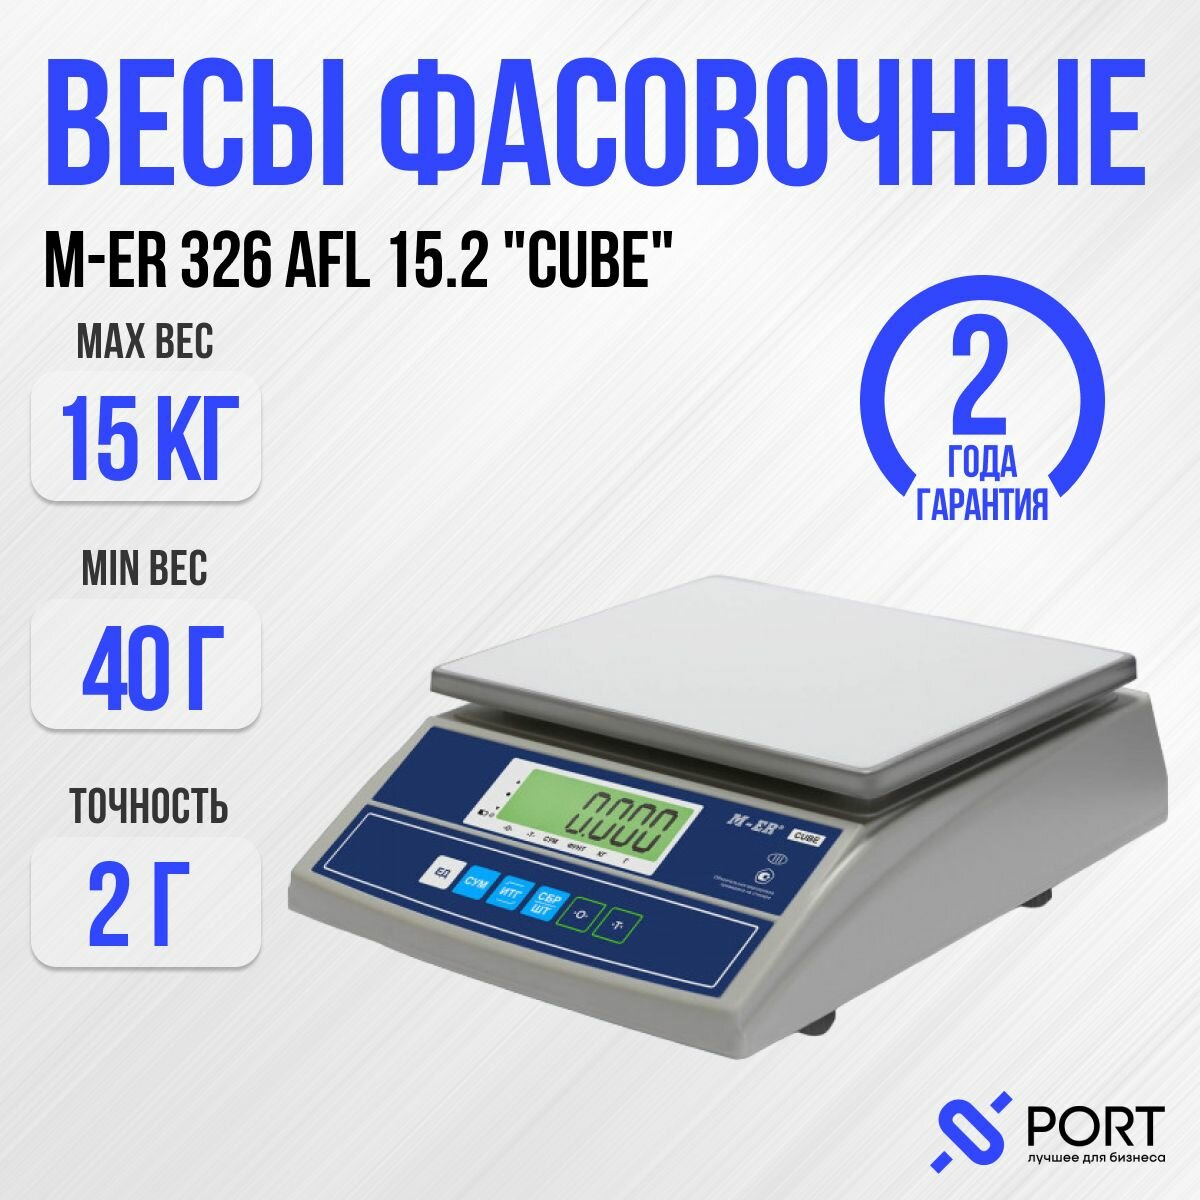 Весы торговые фасовочные M-ER 326 AFL-15.2 "Cube", 15 кг